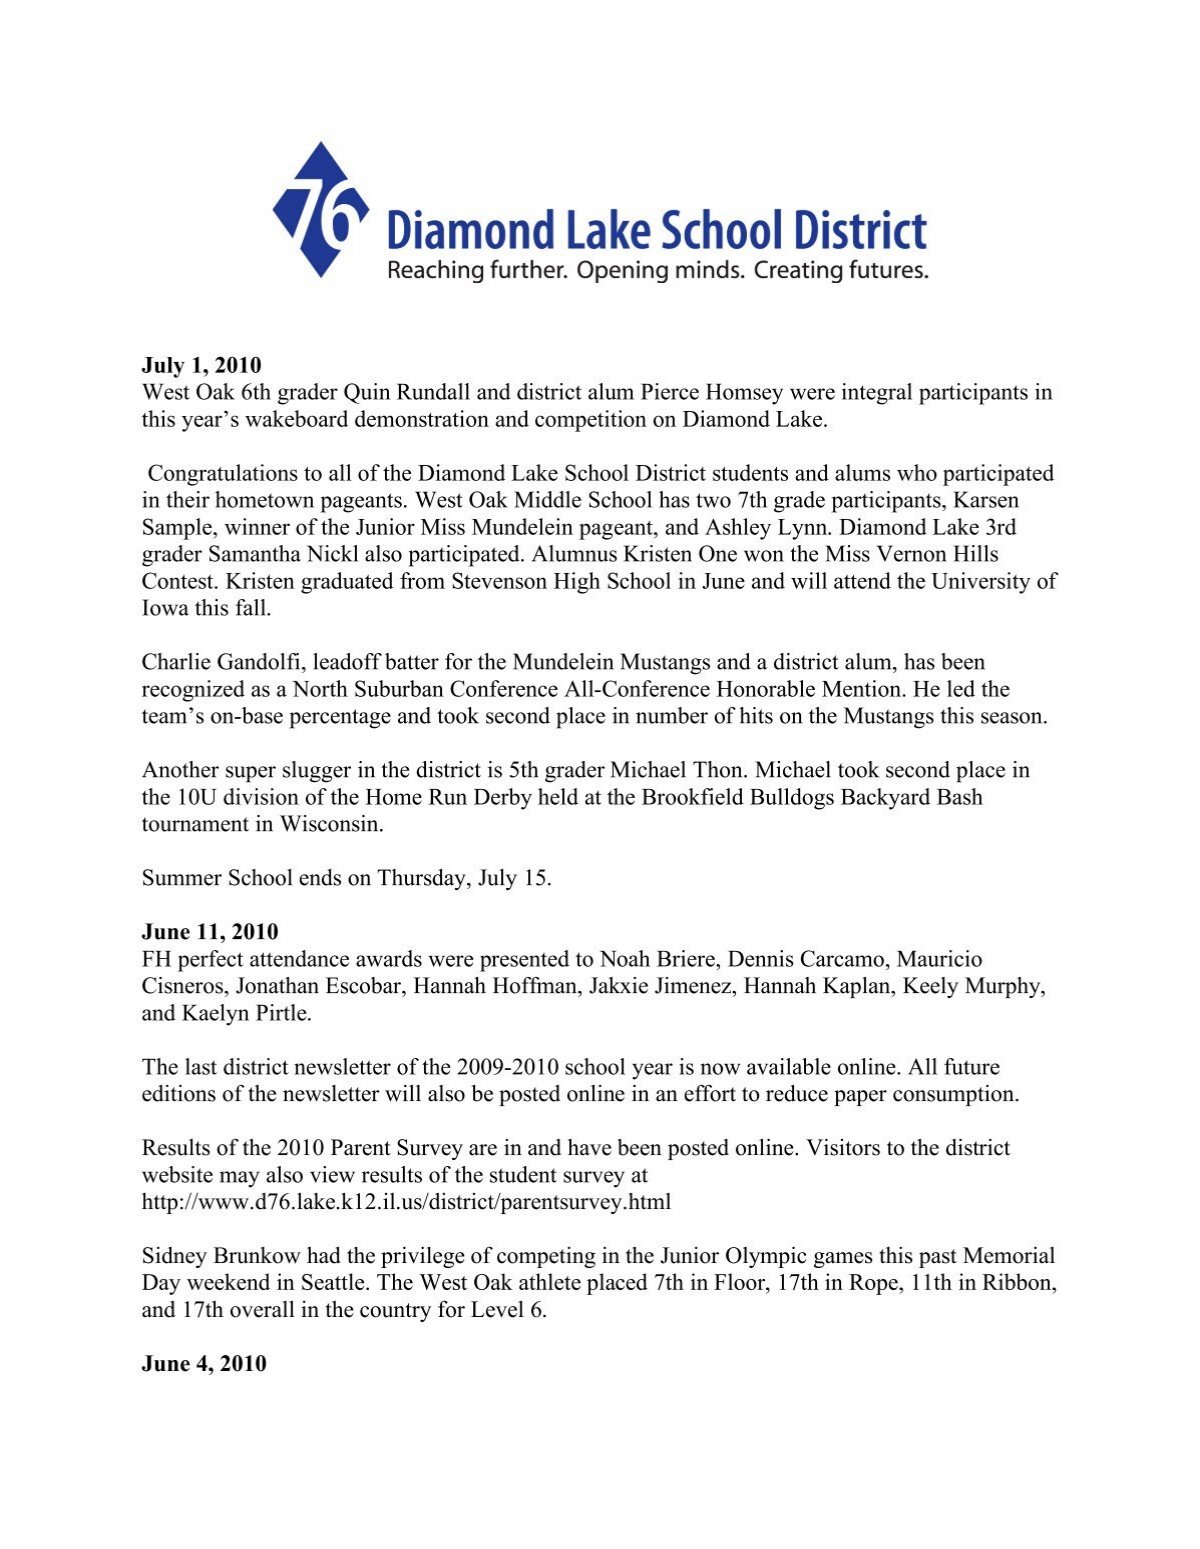 July 1, 2010 - Diamond Lake School District 76